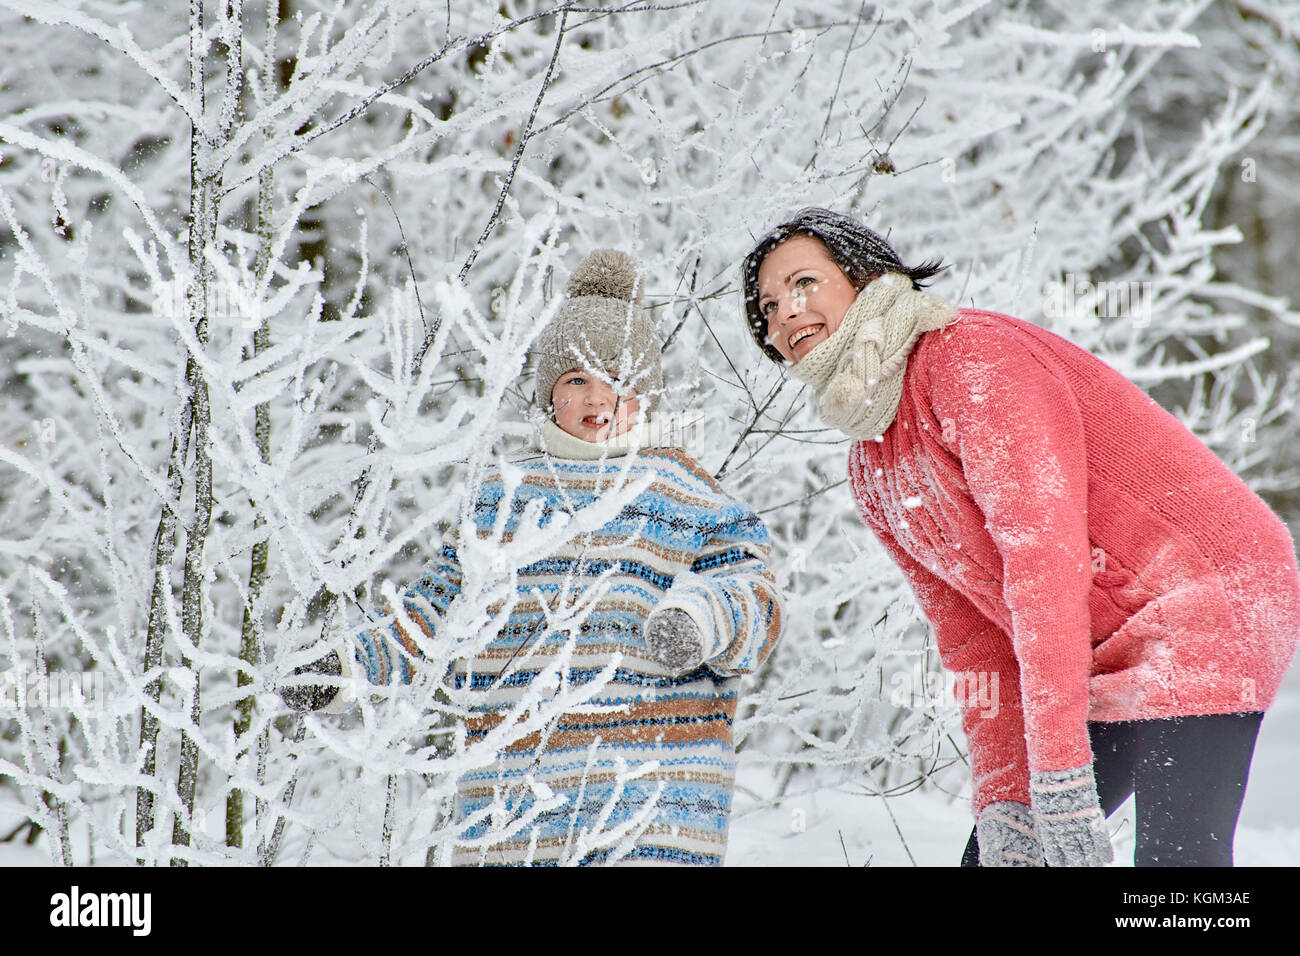 Maman avec une petite fille passer une journée dans la forêt d'hiver. Ils passent par des congères, ils reniflent la neige des branches d'arbres gelés et ri Banque D'Images